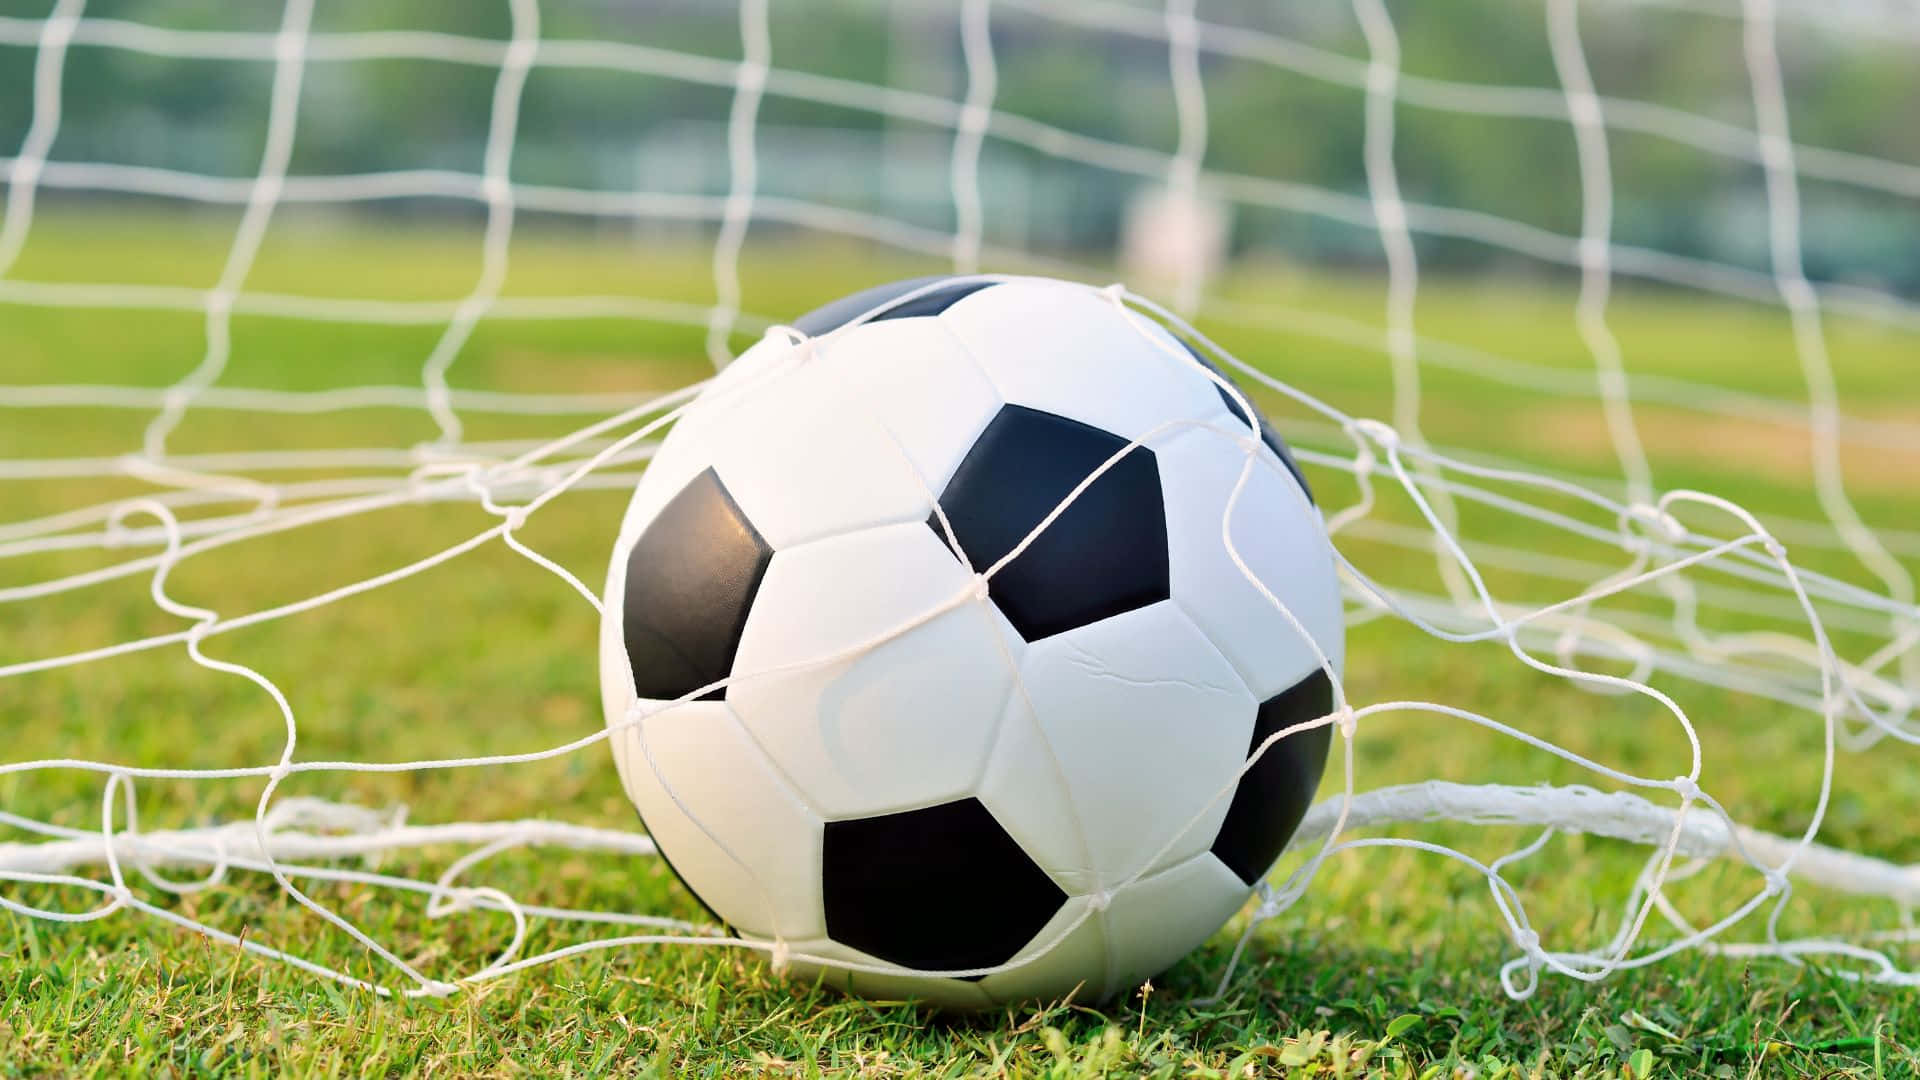 Zeigensie Ihre Unterstützung Für Fußball, Indem Sie Ein Fußballbezogenes Artikel Zur Schau Stellen!